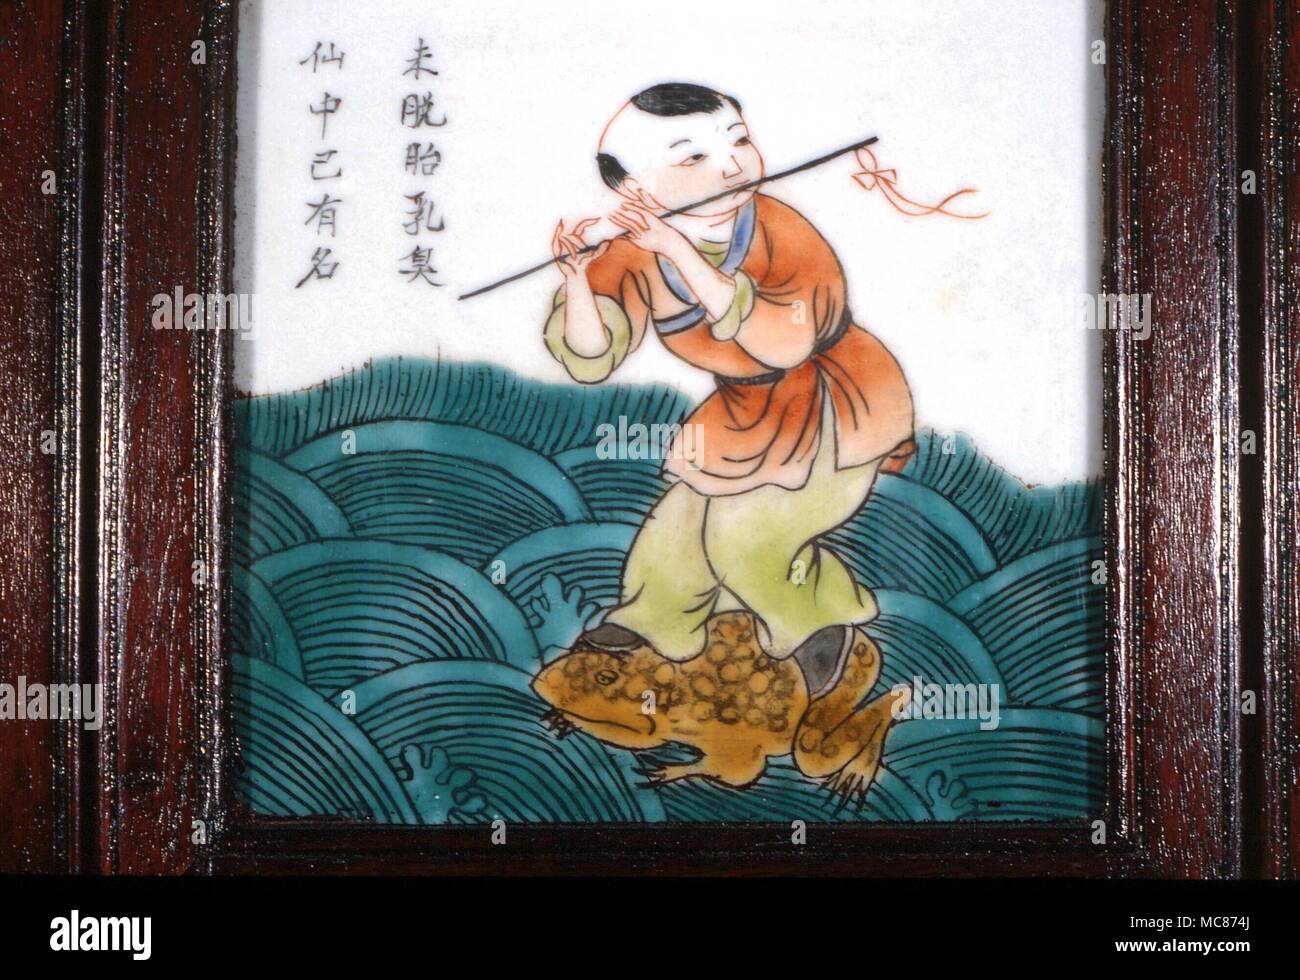 Taoísmo: Uno de los "Ocho Inmortales taoístas- (Pa Hsien). Han Hsiang-tzu, de pie sobre una rana y tocando la flauta. A mediados del siglo xix, mosaico chino desde una pantalla Foto de stock